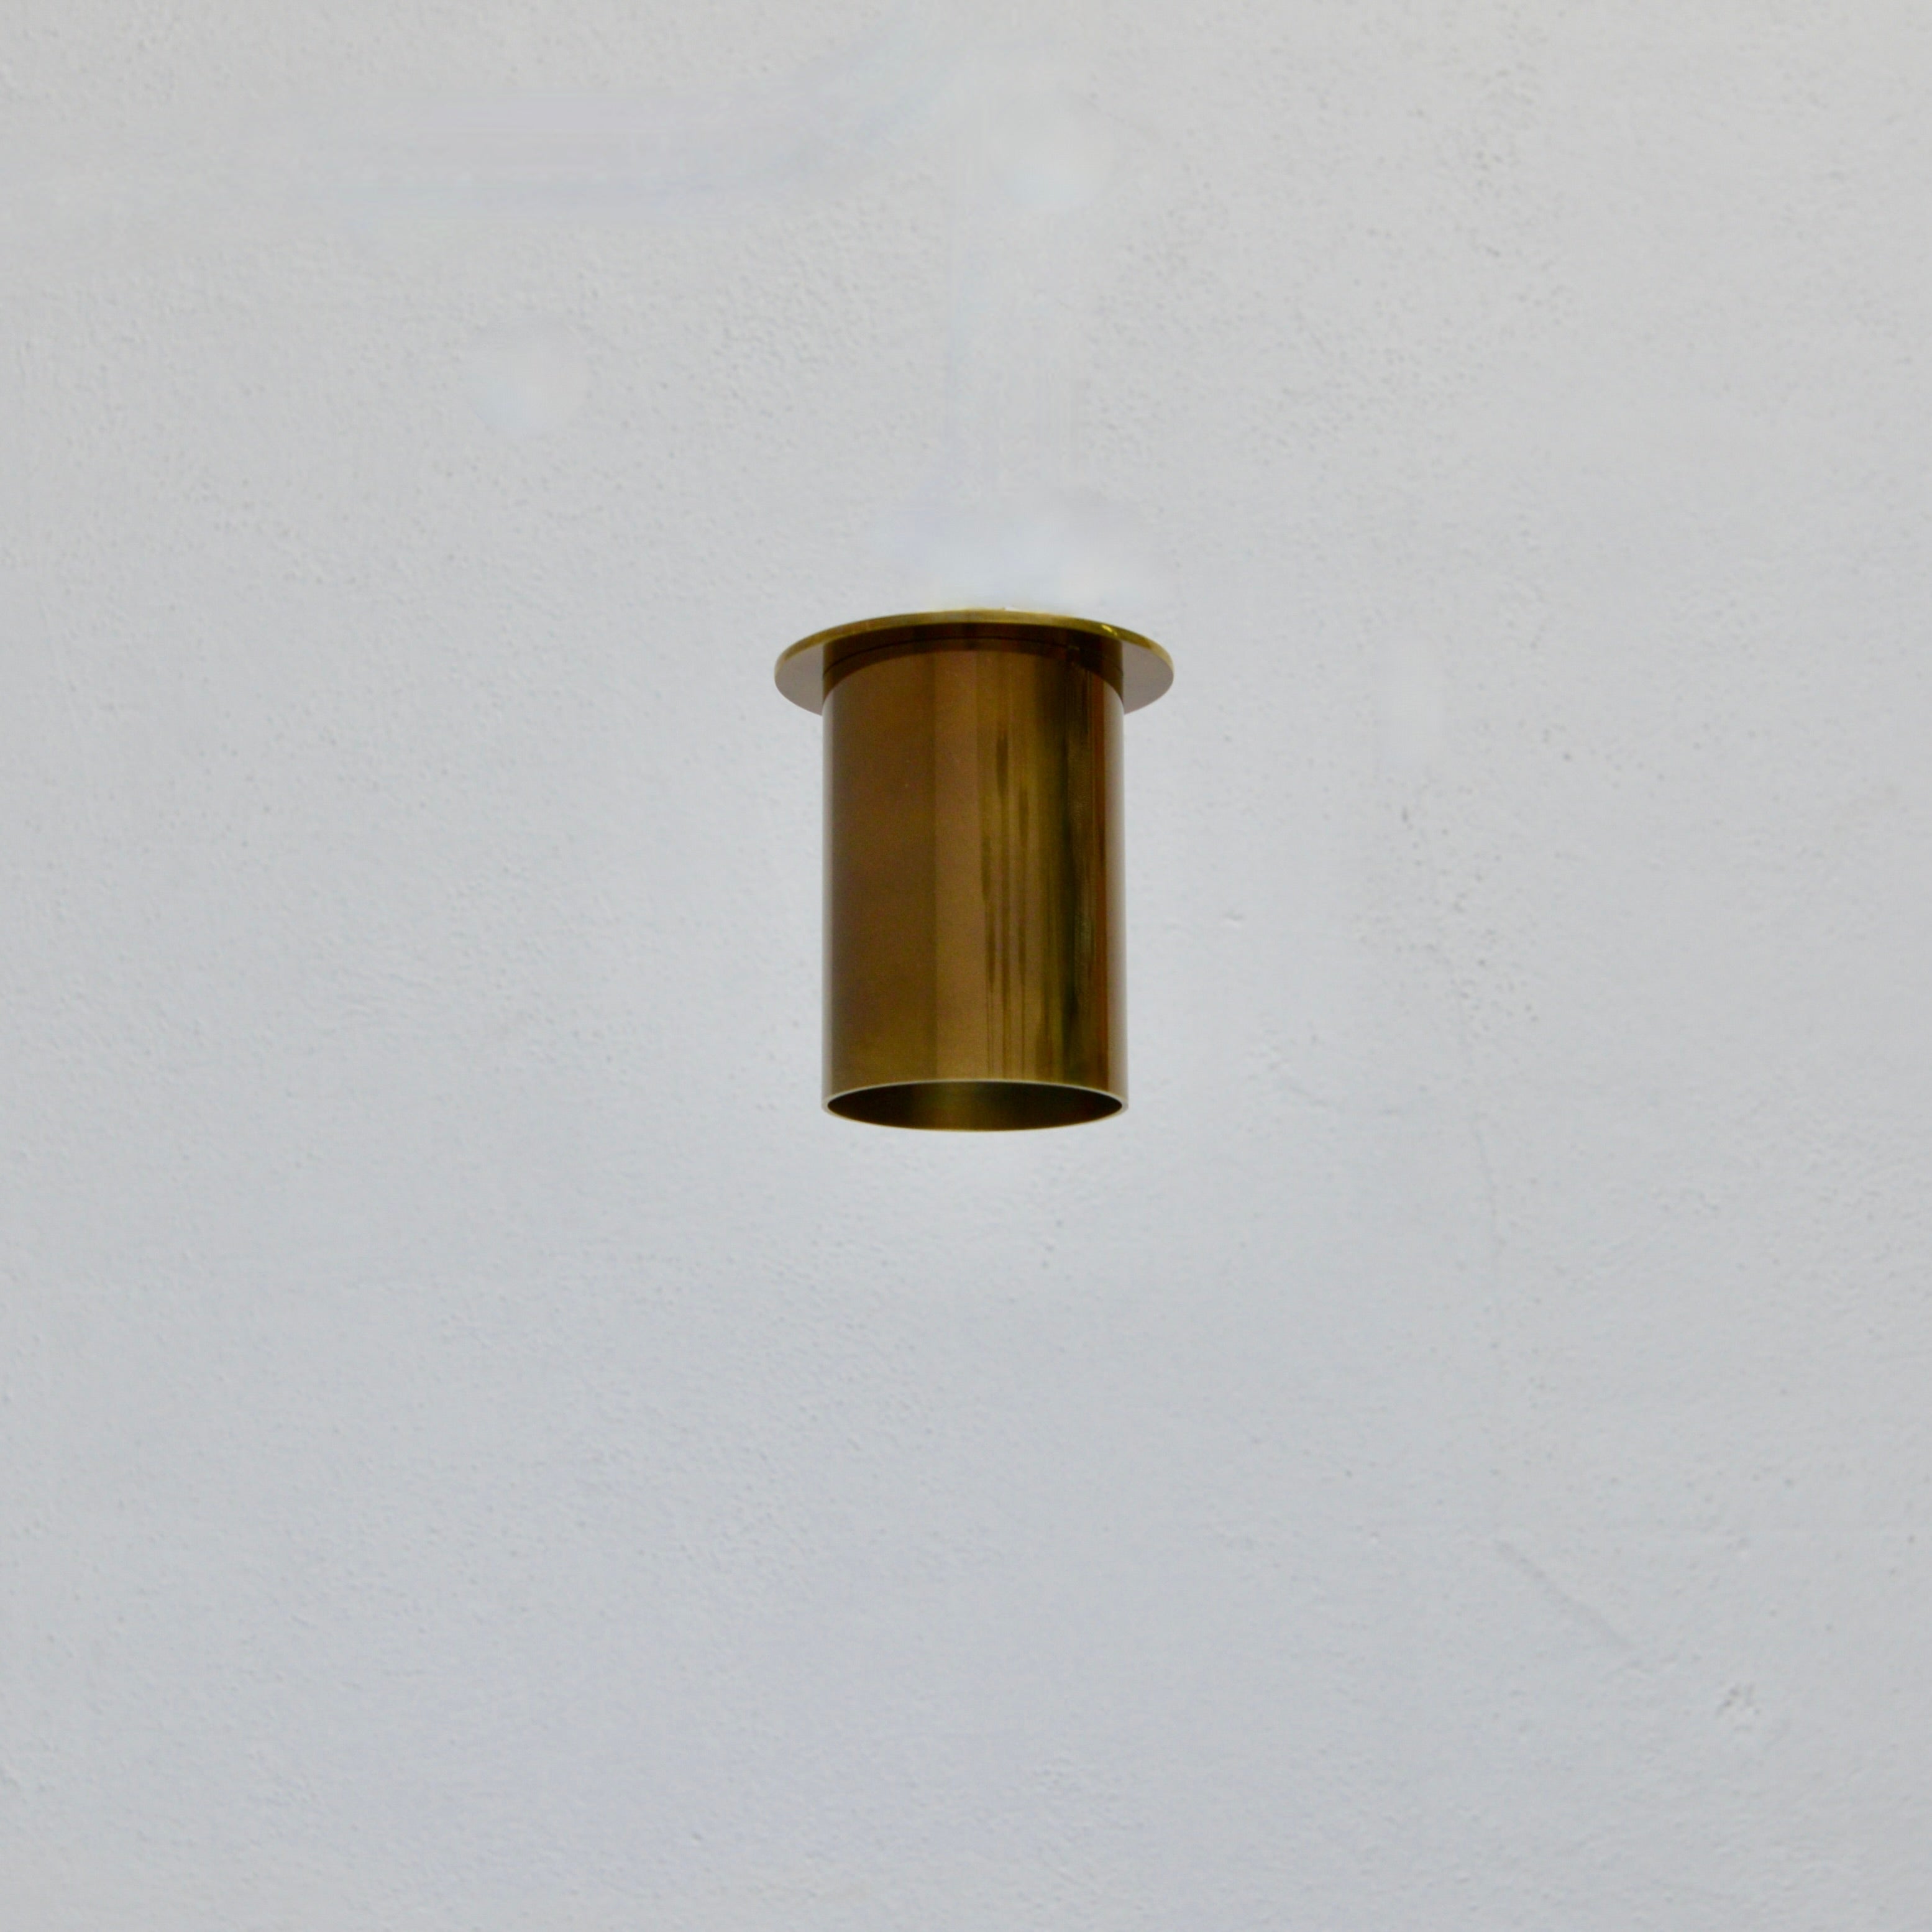 Sharp Ceiling LU Pipe Leuchte von Lumfardo Luminaires, inspiriert vom klassischen italienischen Design der Jahrhundertmitte. Hergestellt aus massivem, gealtertem Messing. Kann mit einer 1-E26-Steckdose verdrahtet werden und ist für den Einsatz in